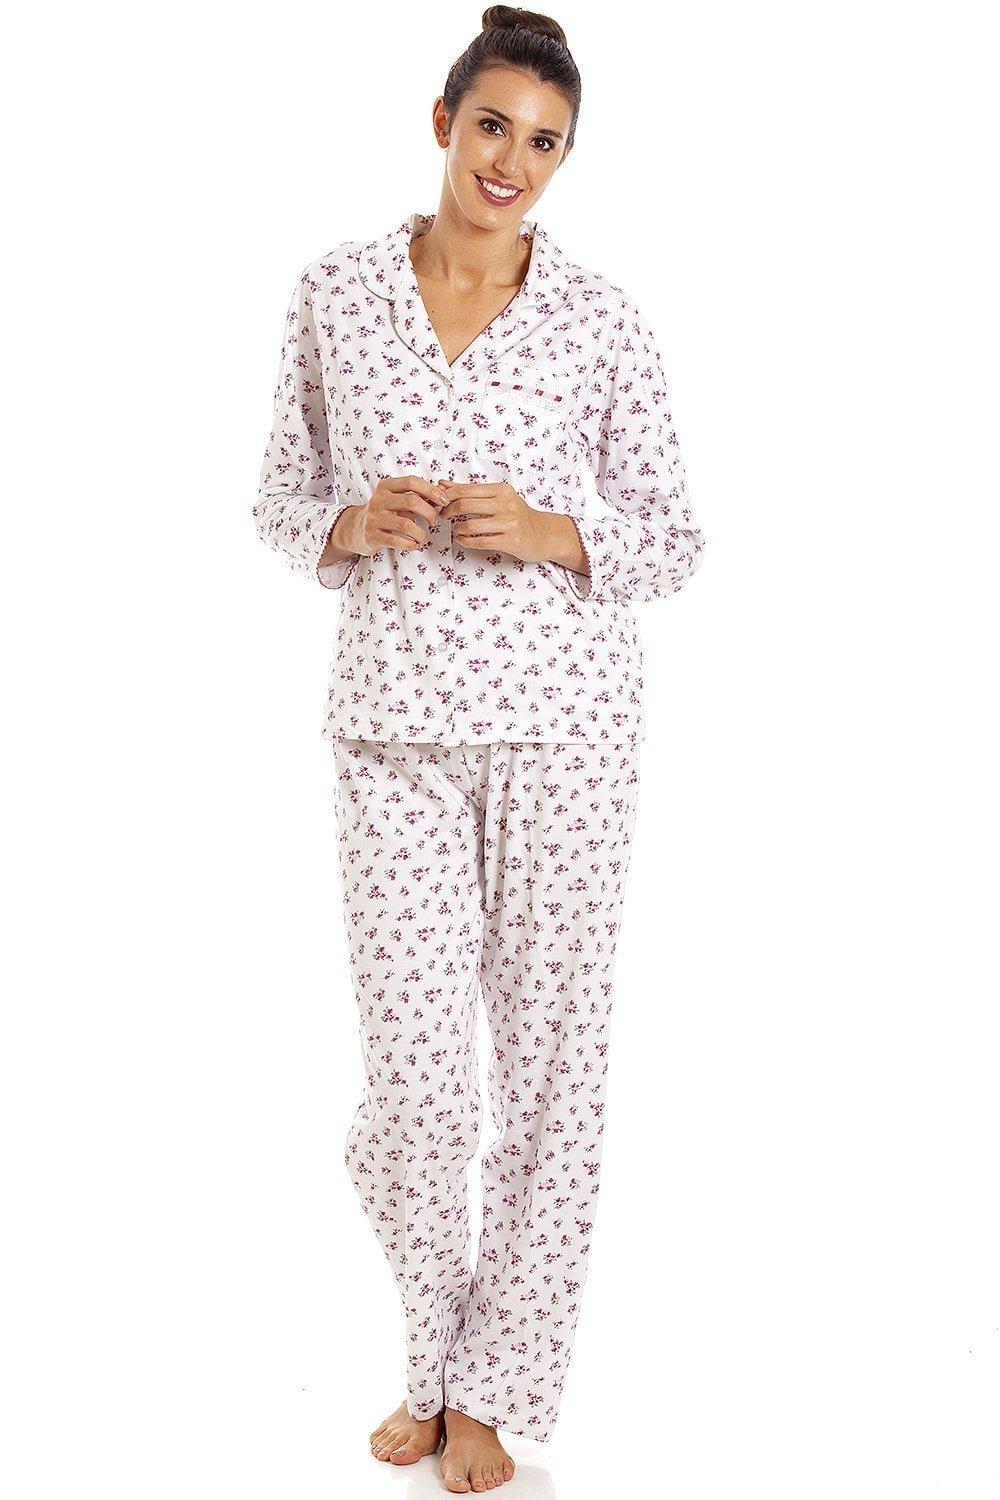 Cotton Pyjamas, Nightwear for Women